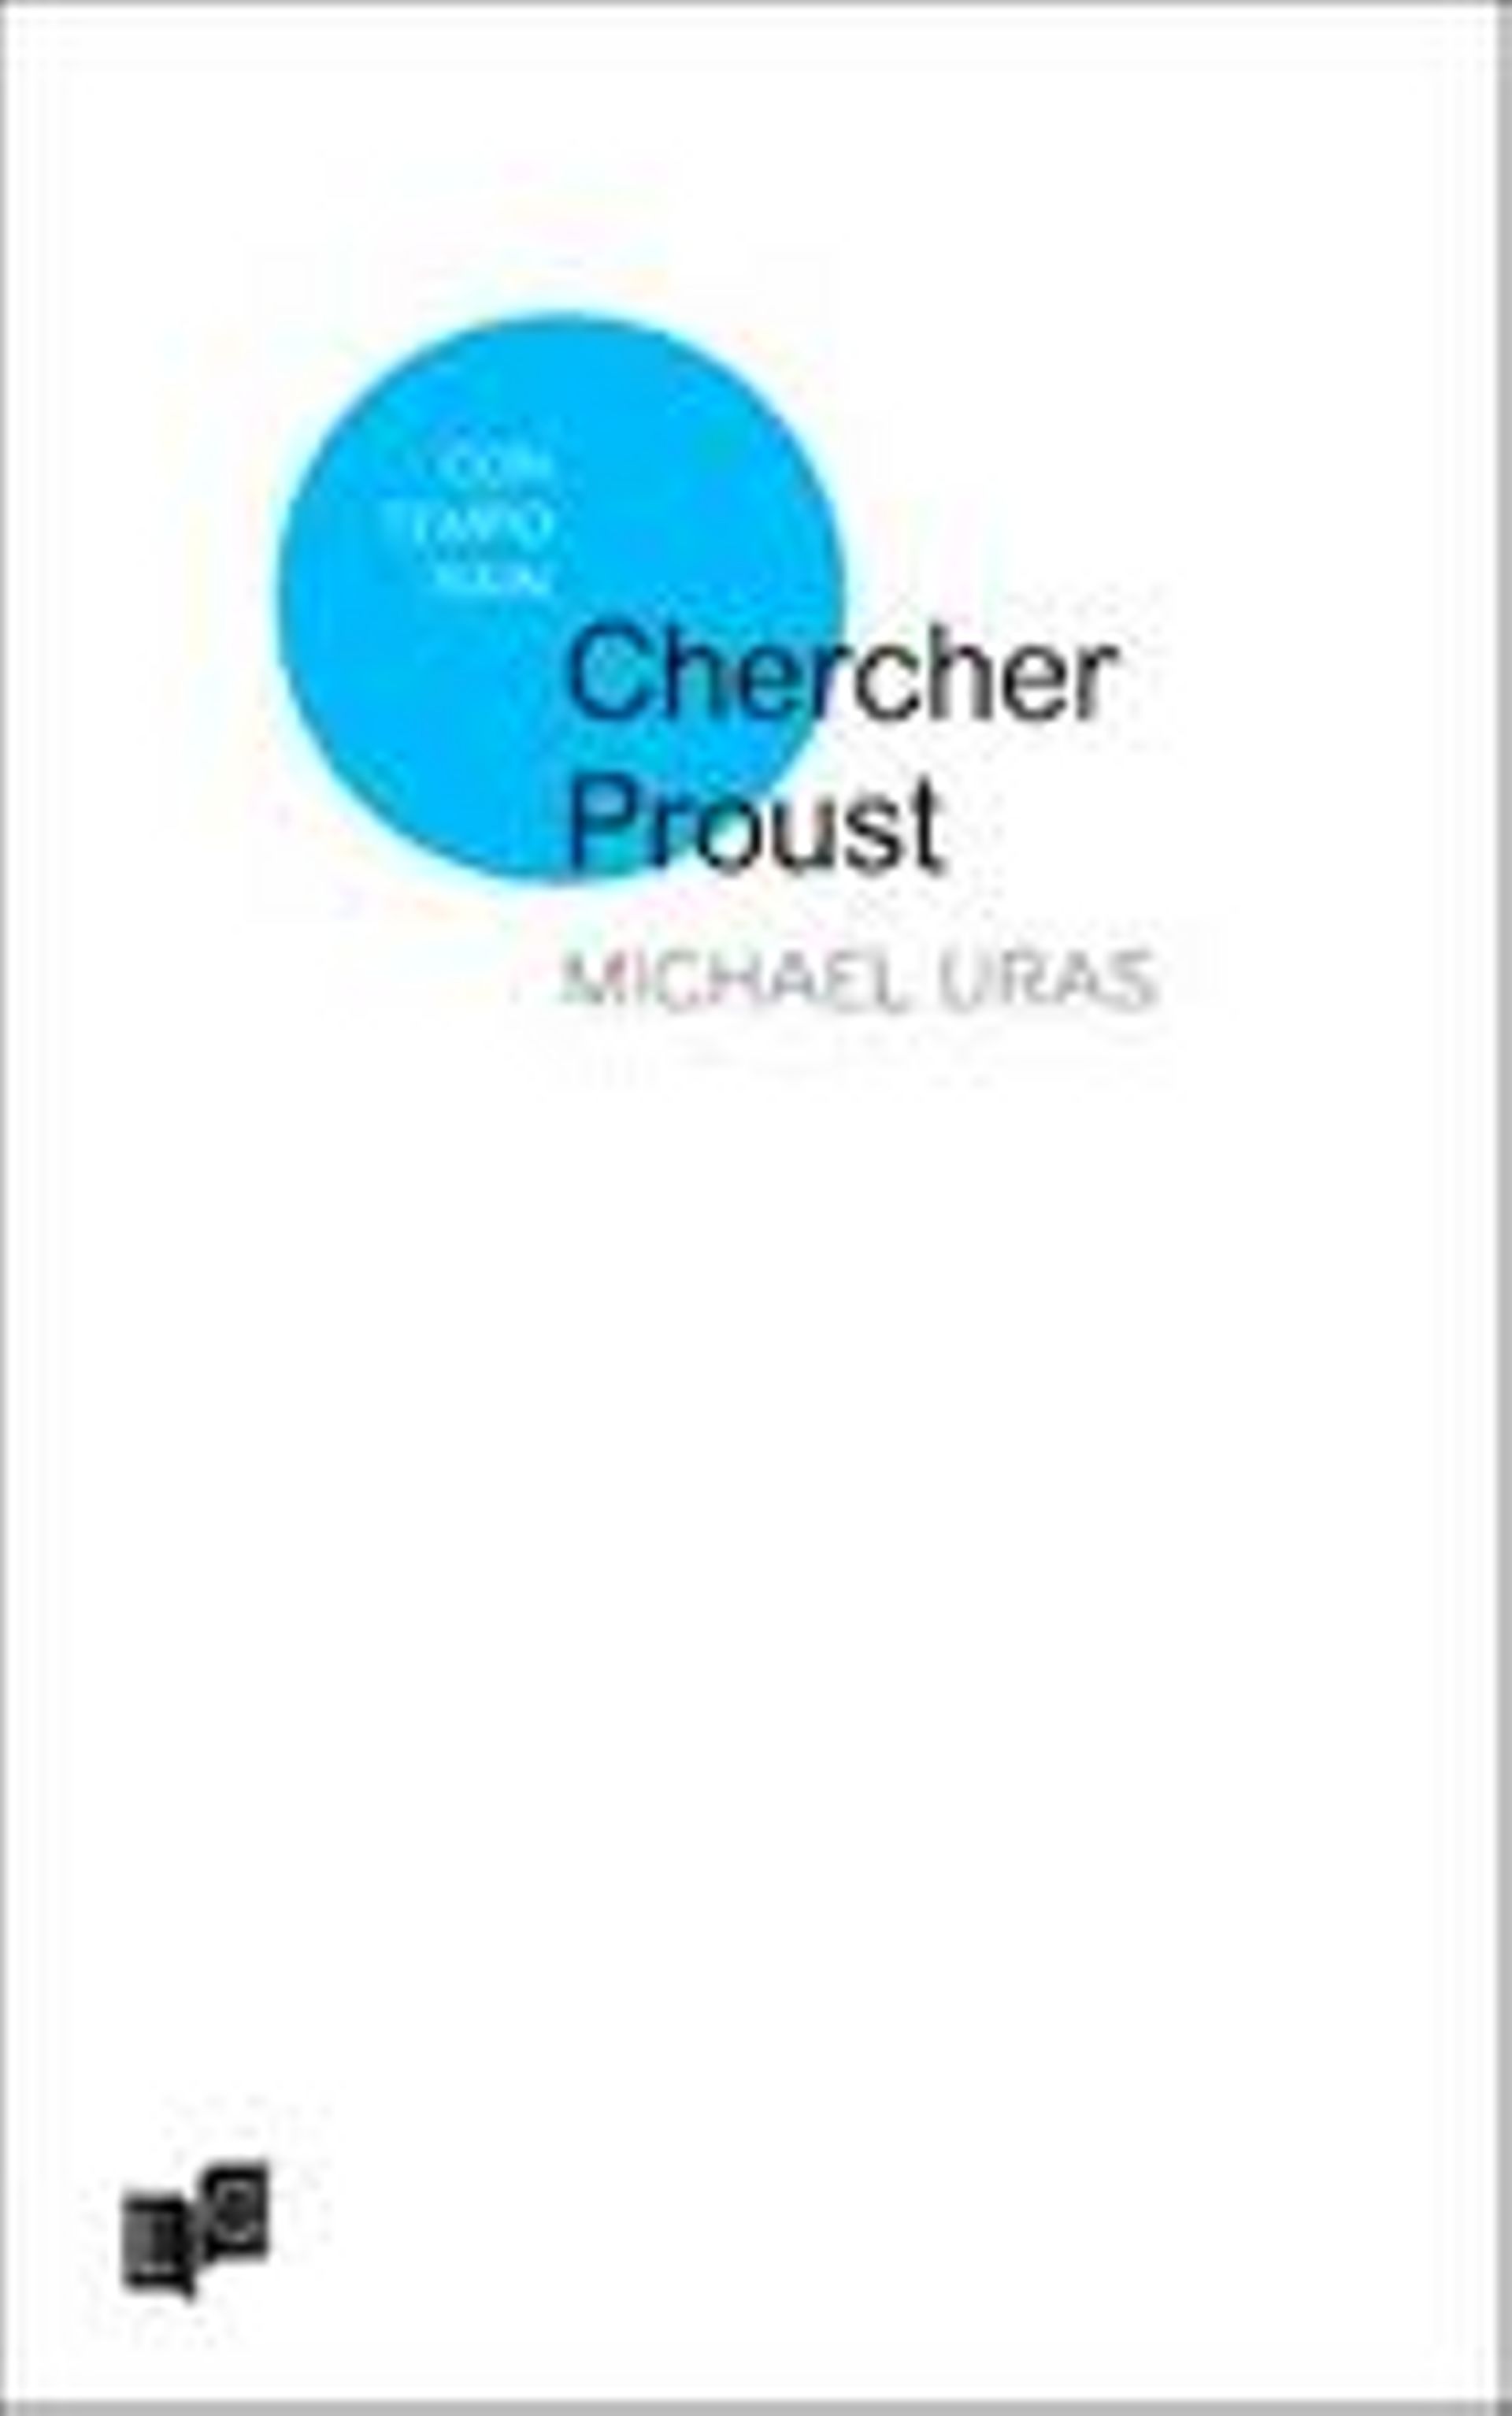 Michaël Uras, "Chercher Proust" (LC éditions du nouveau livre)